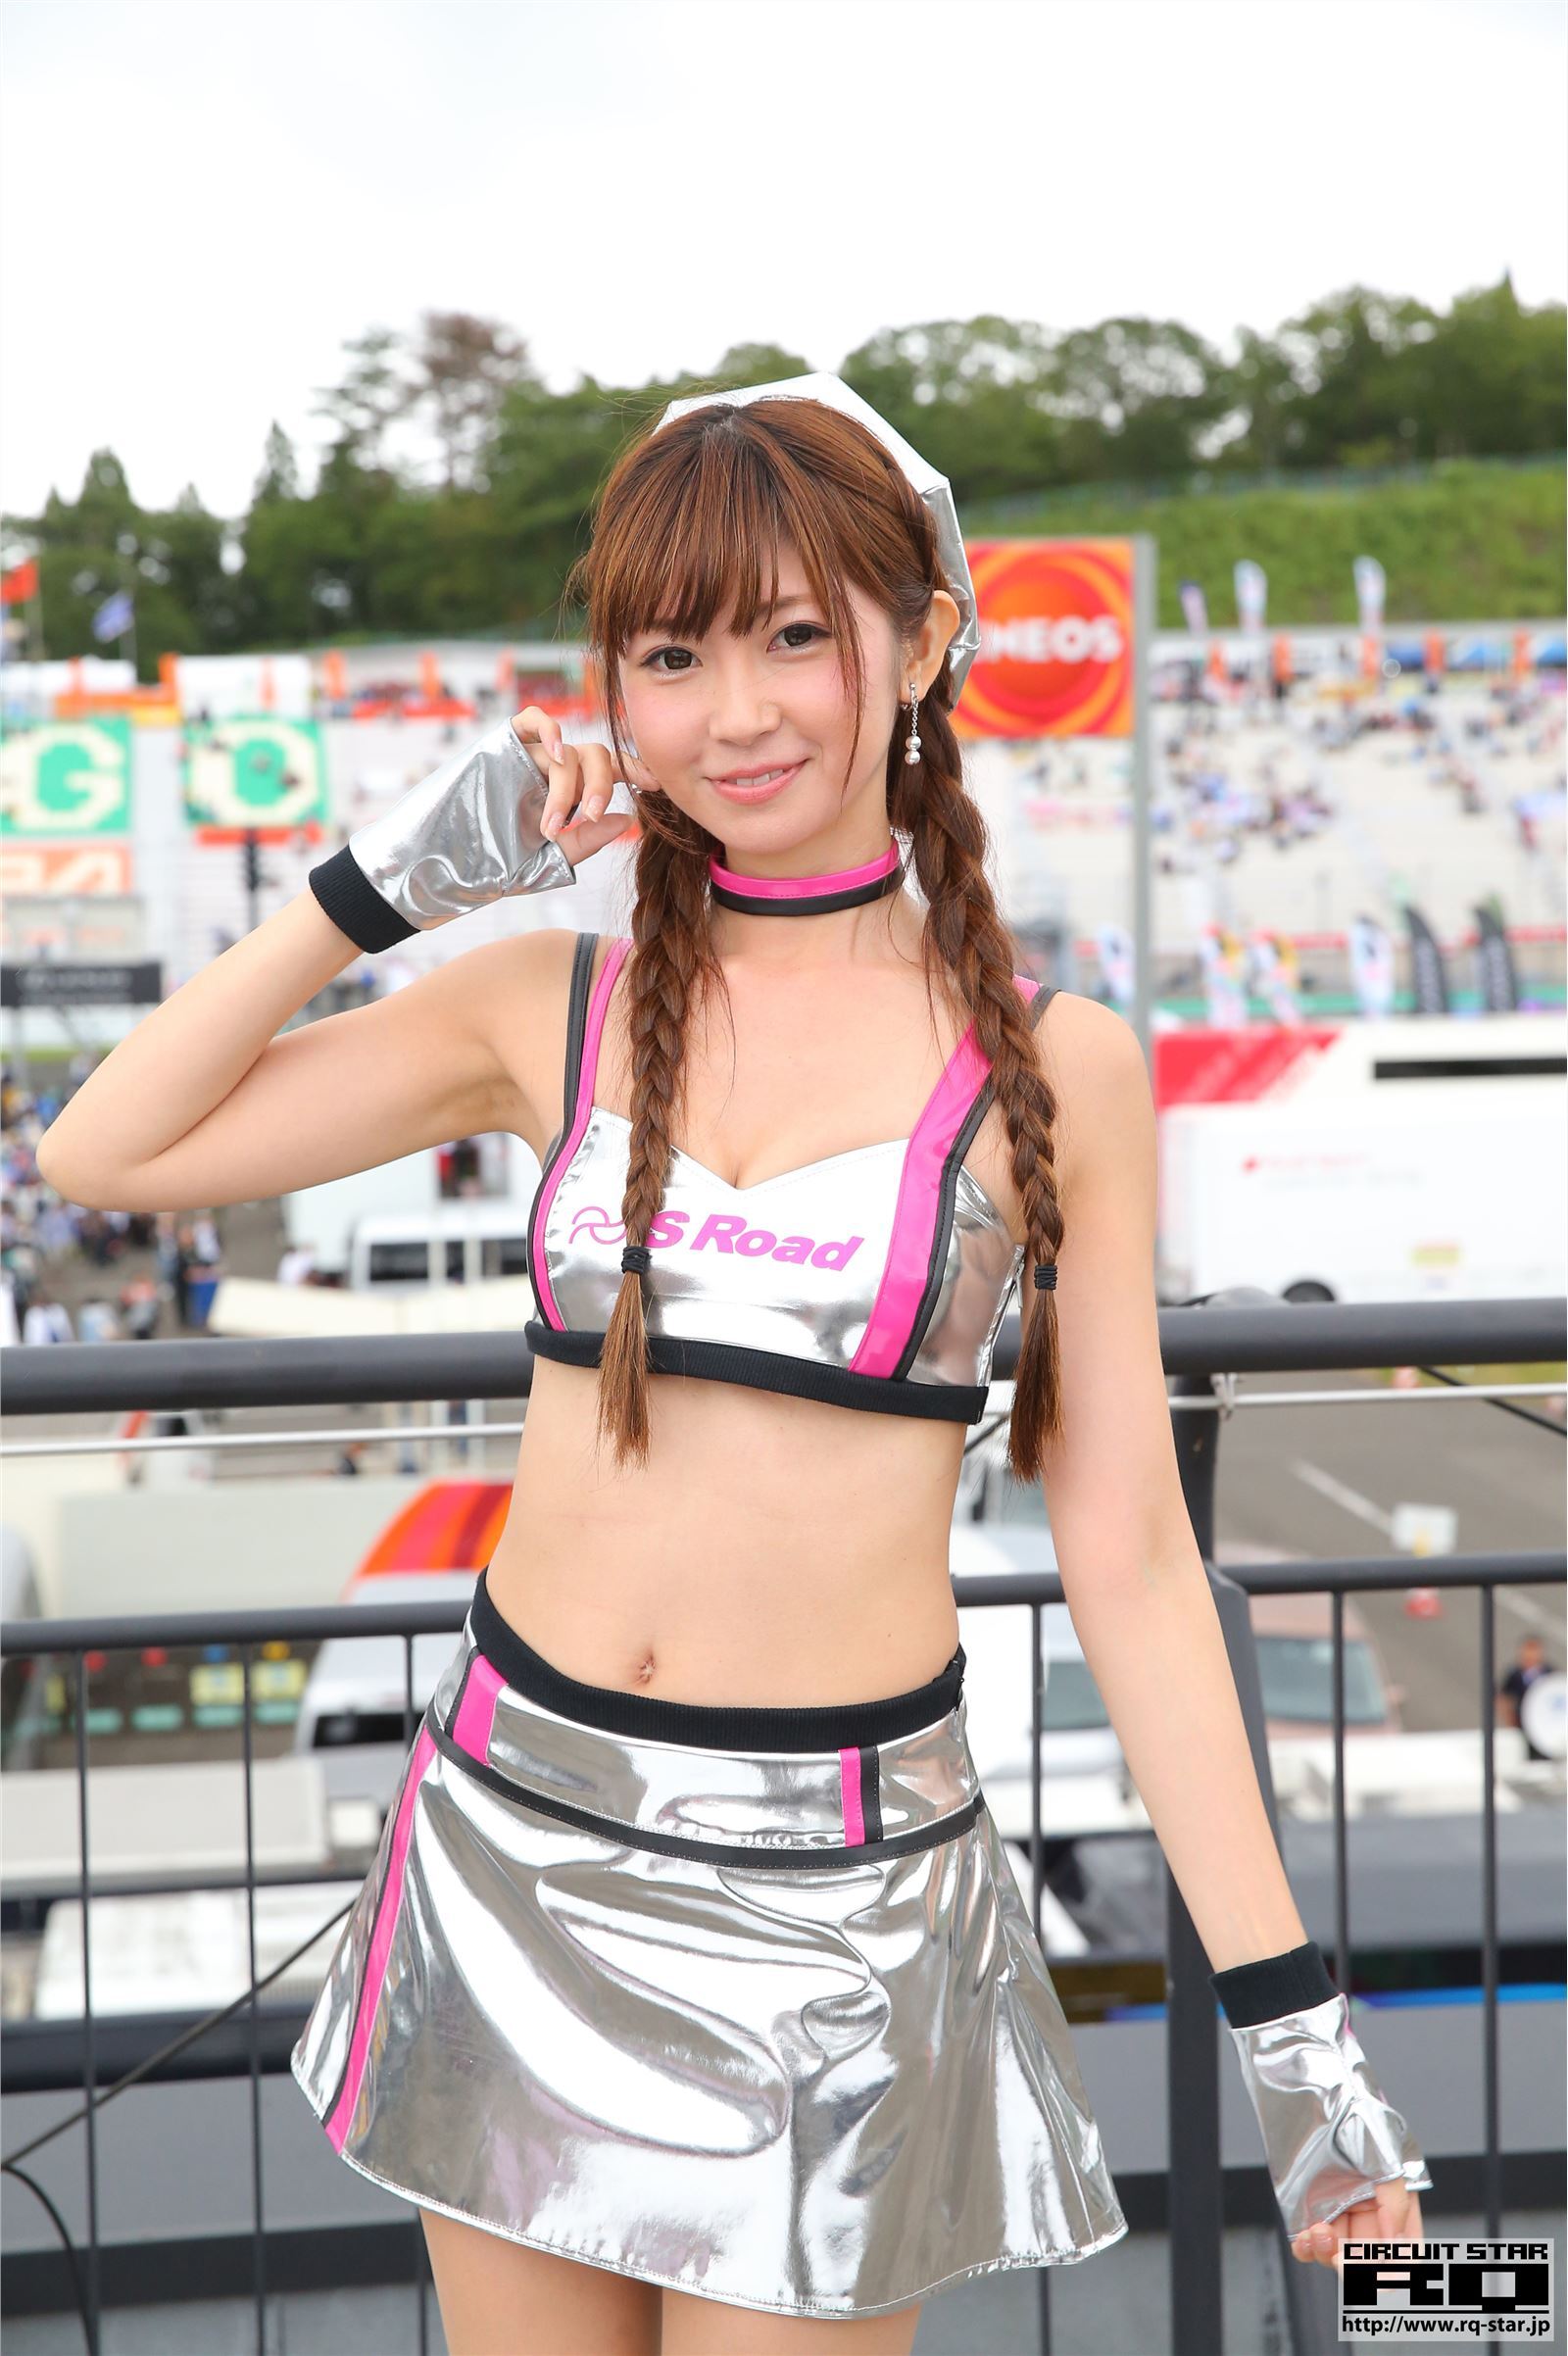 [RQ-STAR]2018.04.30 Airi Sasaki 佐崎愛里 Race Queen